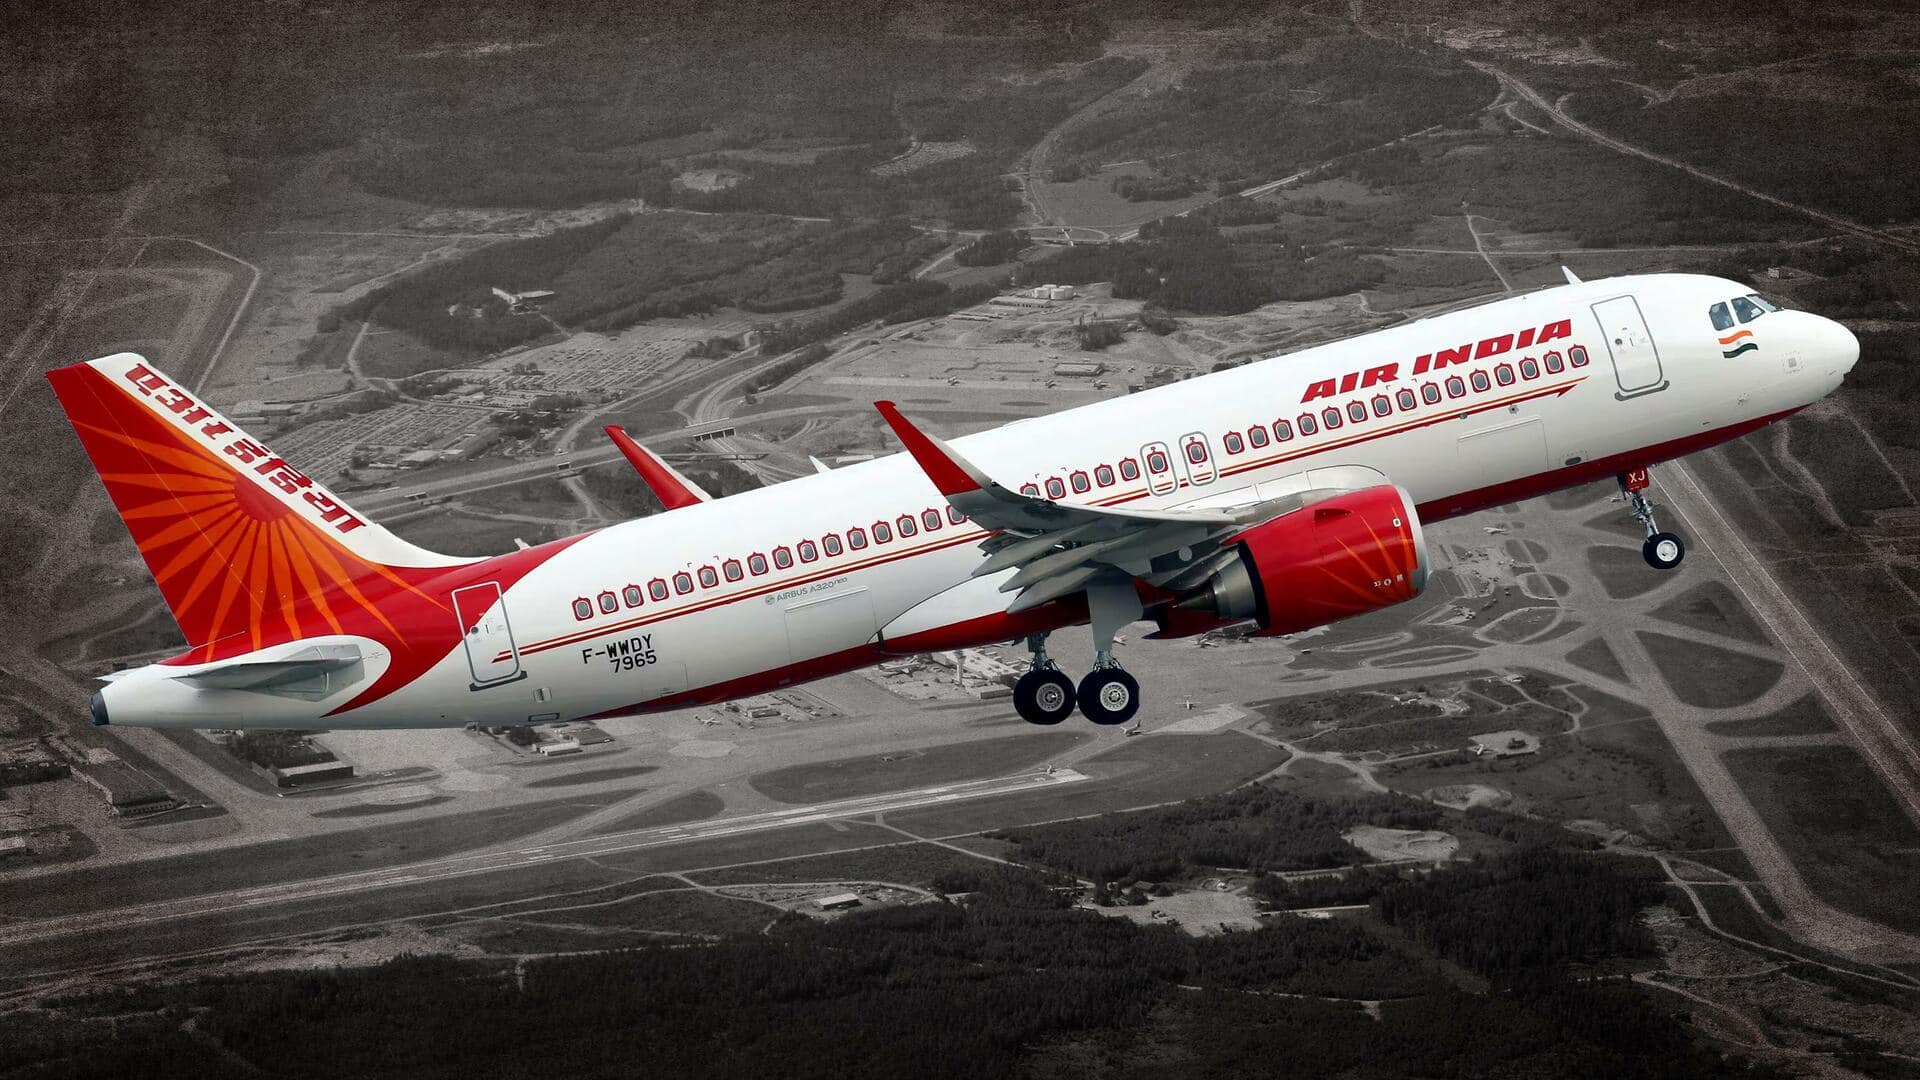 एयर इंडिया की नेवार्क-दिल्ली फ्लाइट की इंजन से तेल लीक के बाद स्वीडन में इमरजेंसी लैंडिंग